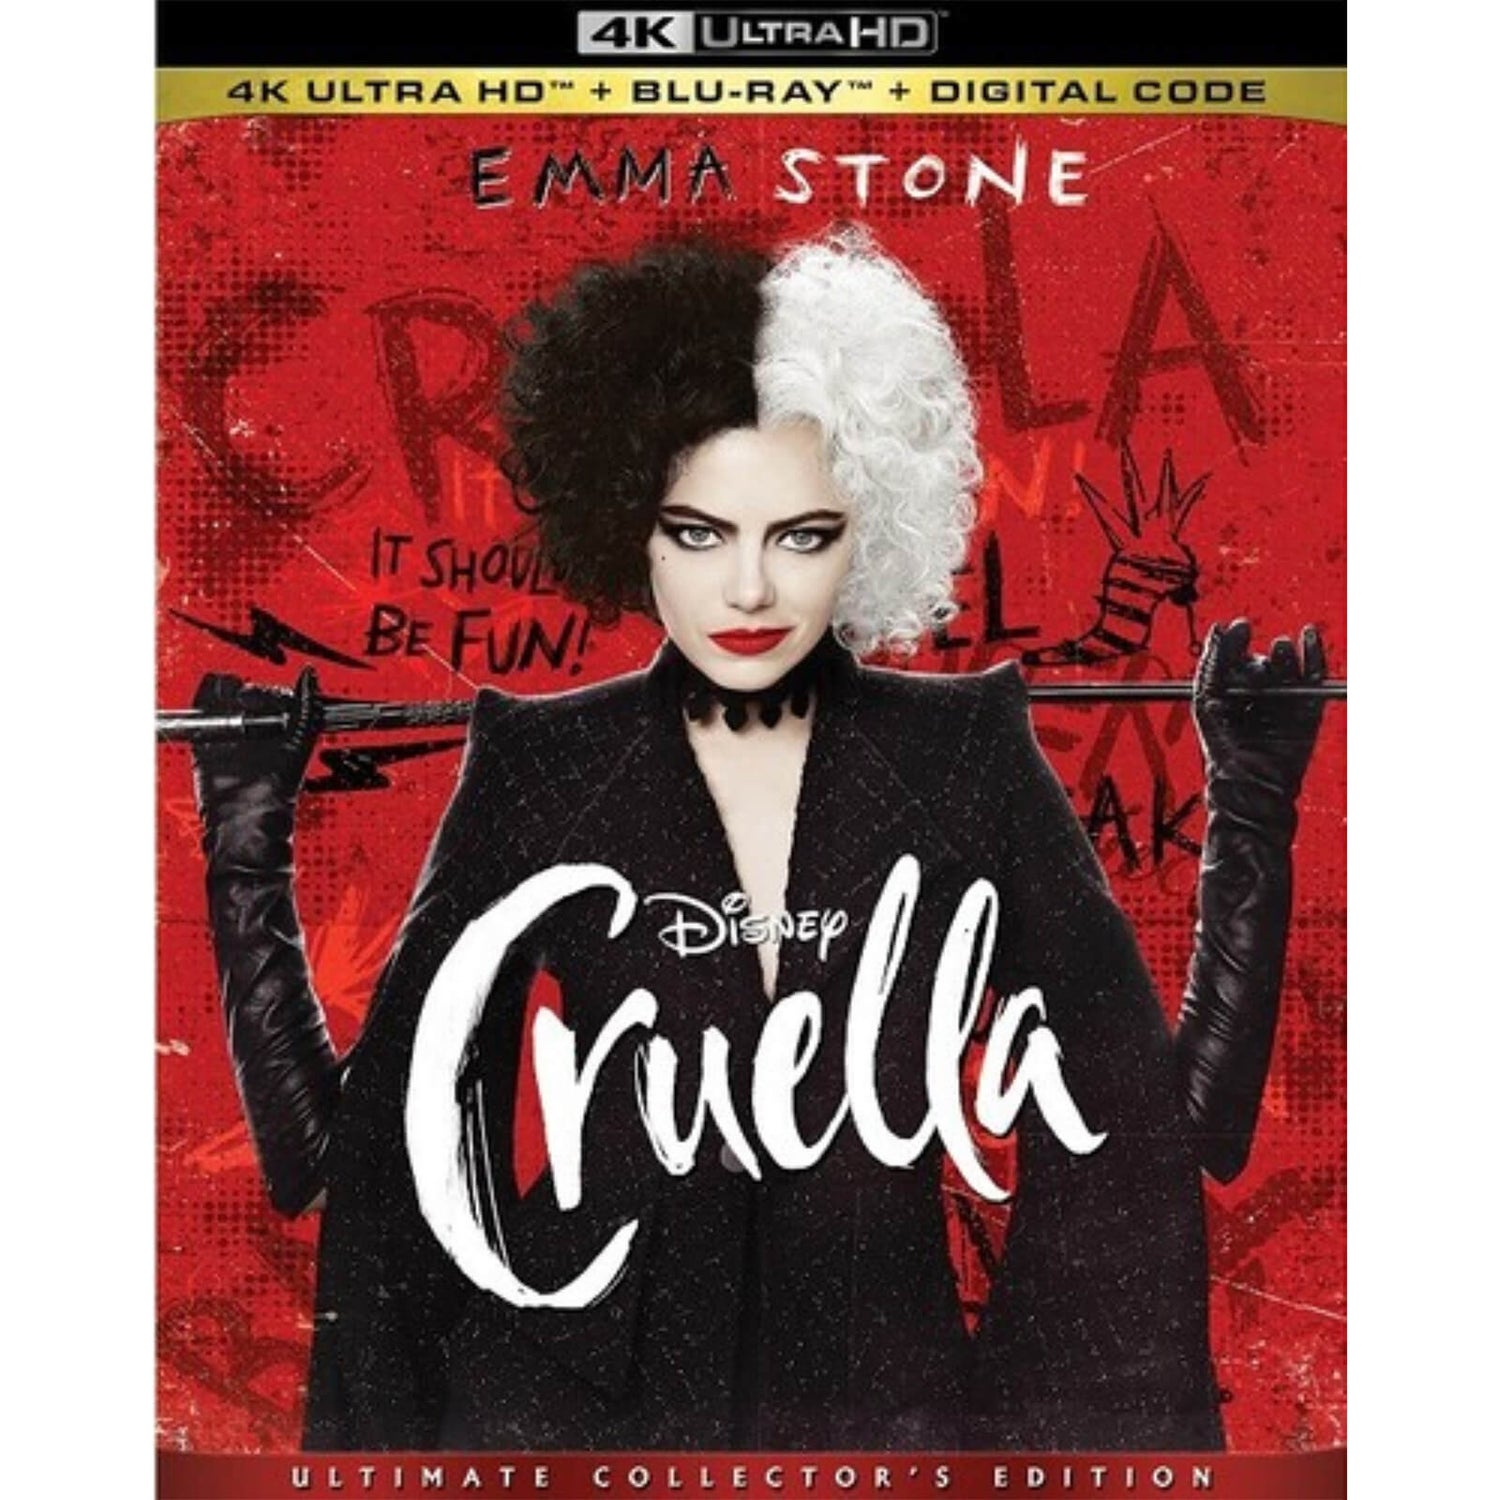 Cruella: Ultimate Collector's Edition - 4K Ultra HD (Includes Blu-ray) (US Import)